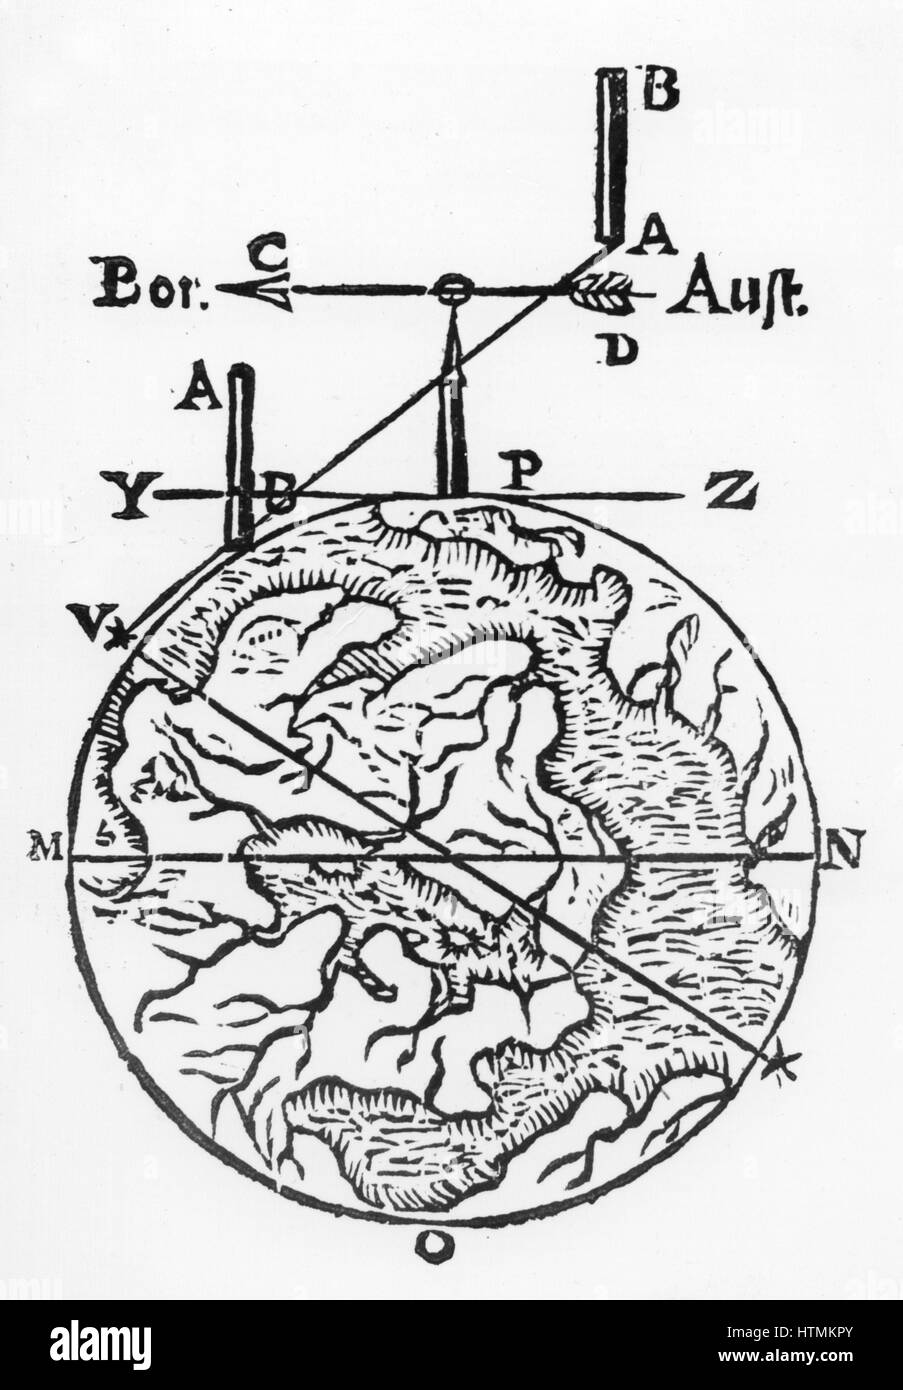 La cartographie et l'arpentage à l'aide d'un compas magnétique. 'Bor est au  nord et 'Aust' est au sud. D'Athanasius Kircher 'Magnes : sive de arte  magnetica', 1643. Gravure sur bois Photo Stock -